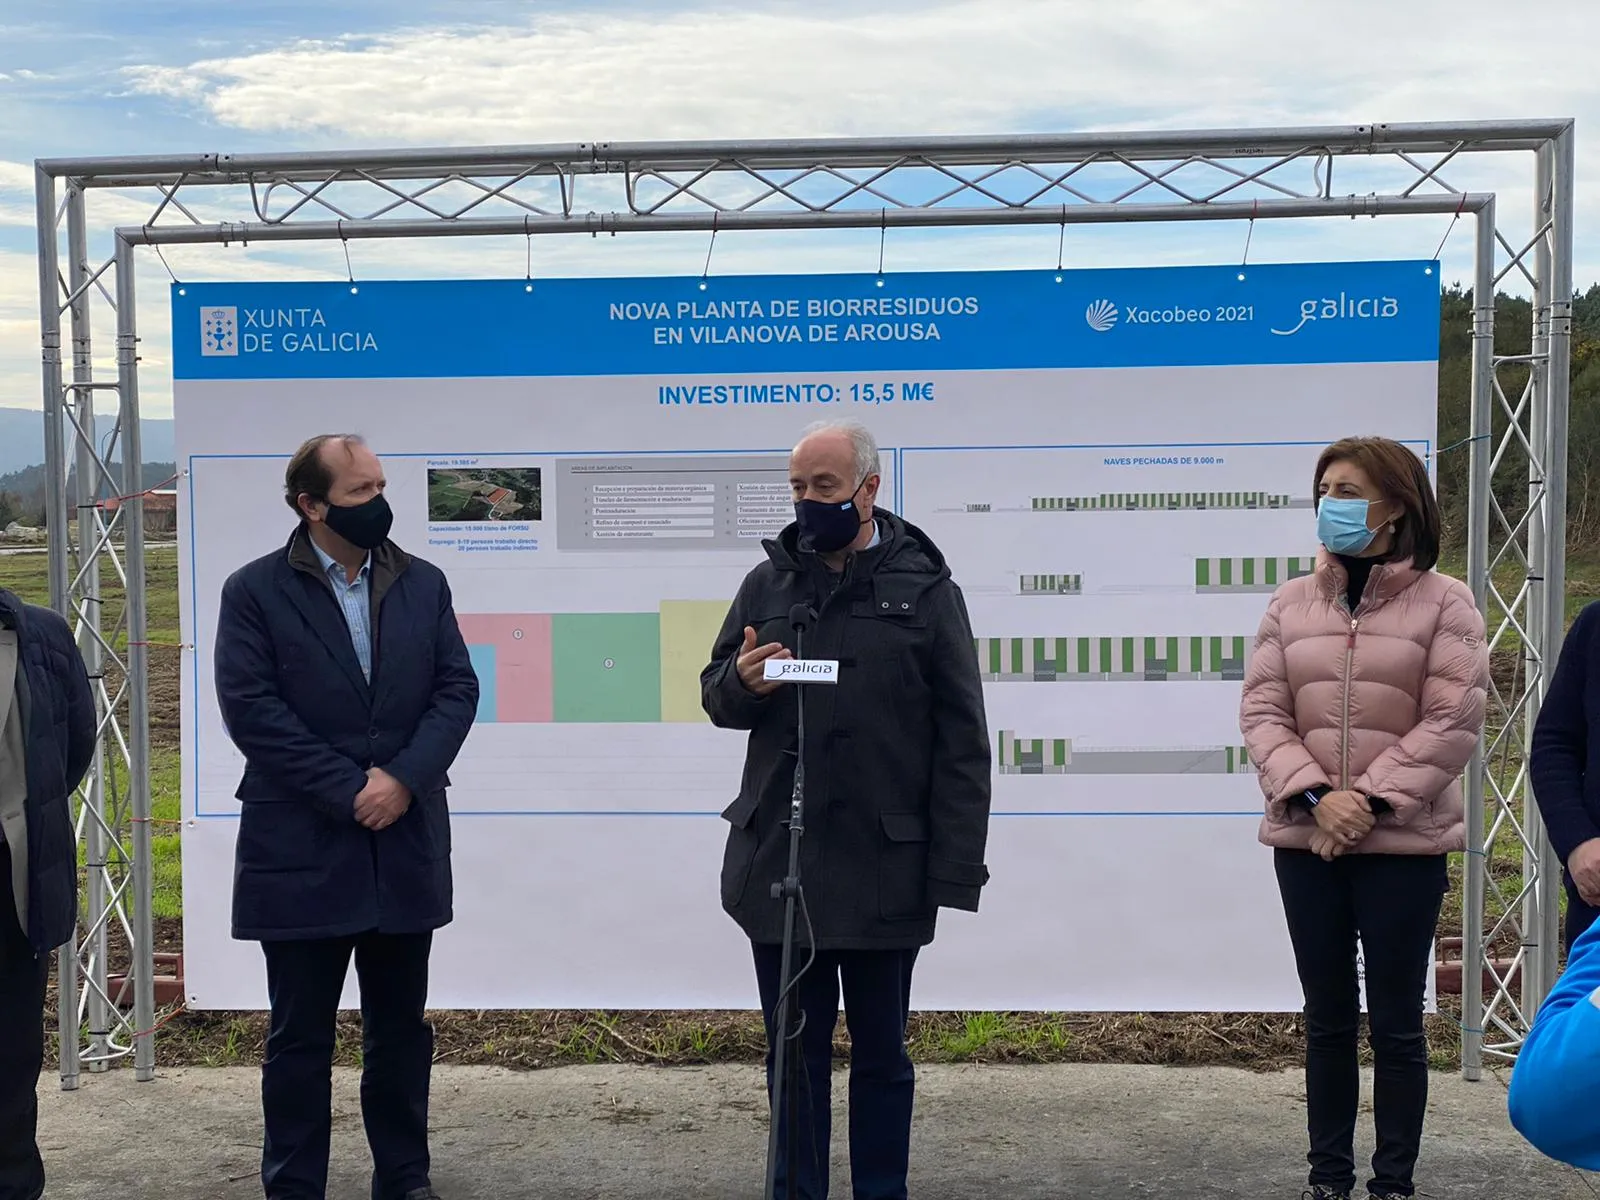 Medio Ambiente, a través de Sogama, invierte 15,5 M€ en la futura planta de biorresiduos de Vilanova